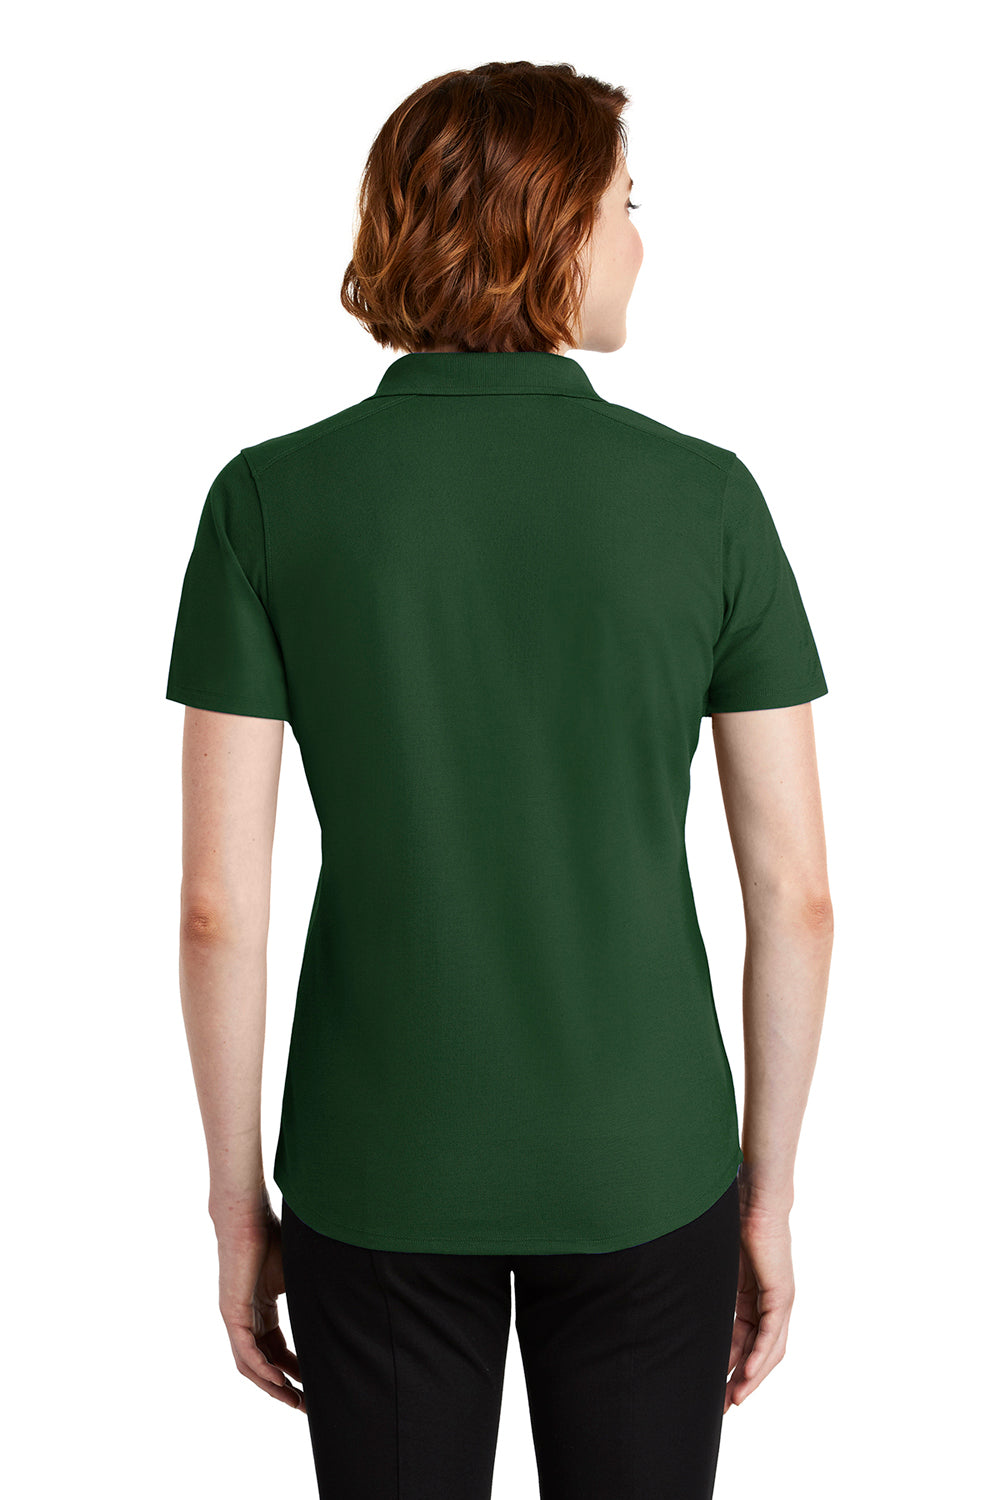 Port Authority LK600 Womens EZPerformance Moisture Wicking Short Sleeve Polo Shirt Deep Forest Green Back